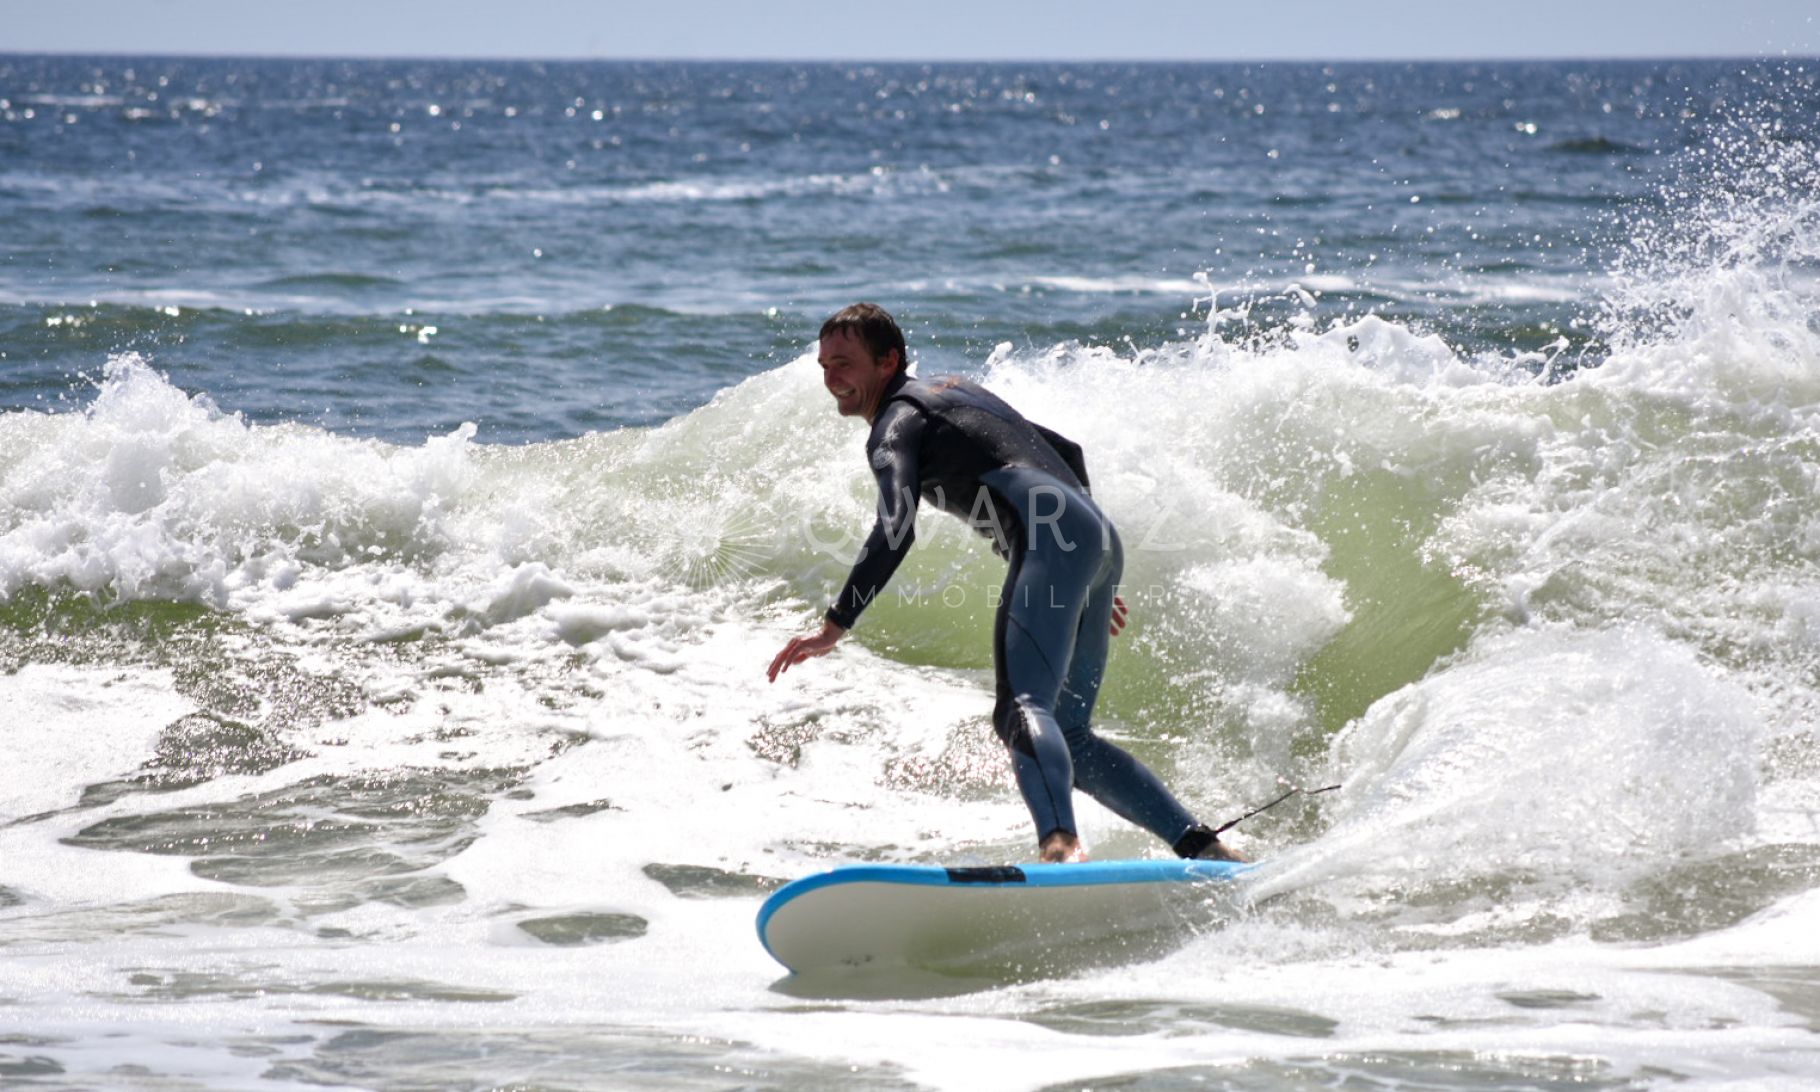 West Surf Association à Guidel : entretien avec Stéphane Ibarboure, vice-président.